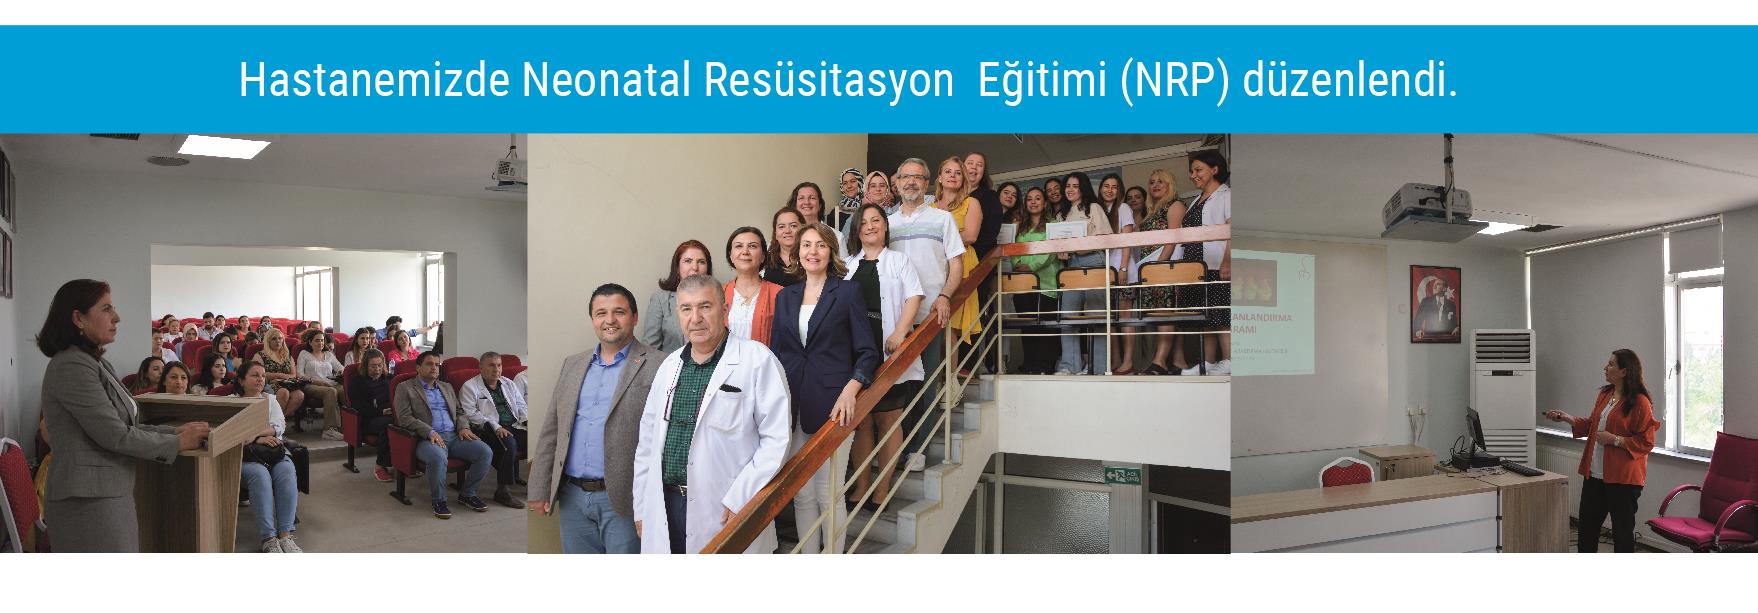 Hastanemizde Neonatal Resüsitasyon  Eğitimi (NRP) düzenlendi